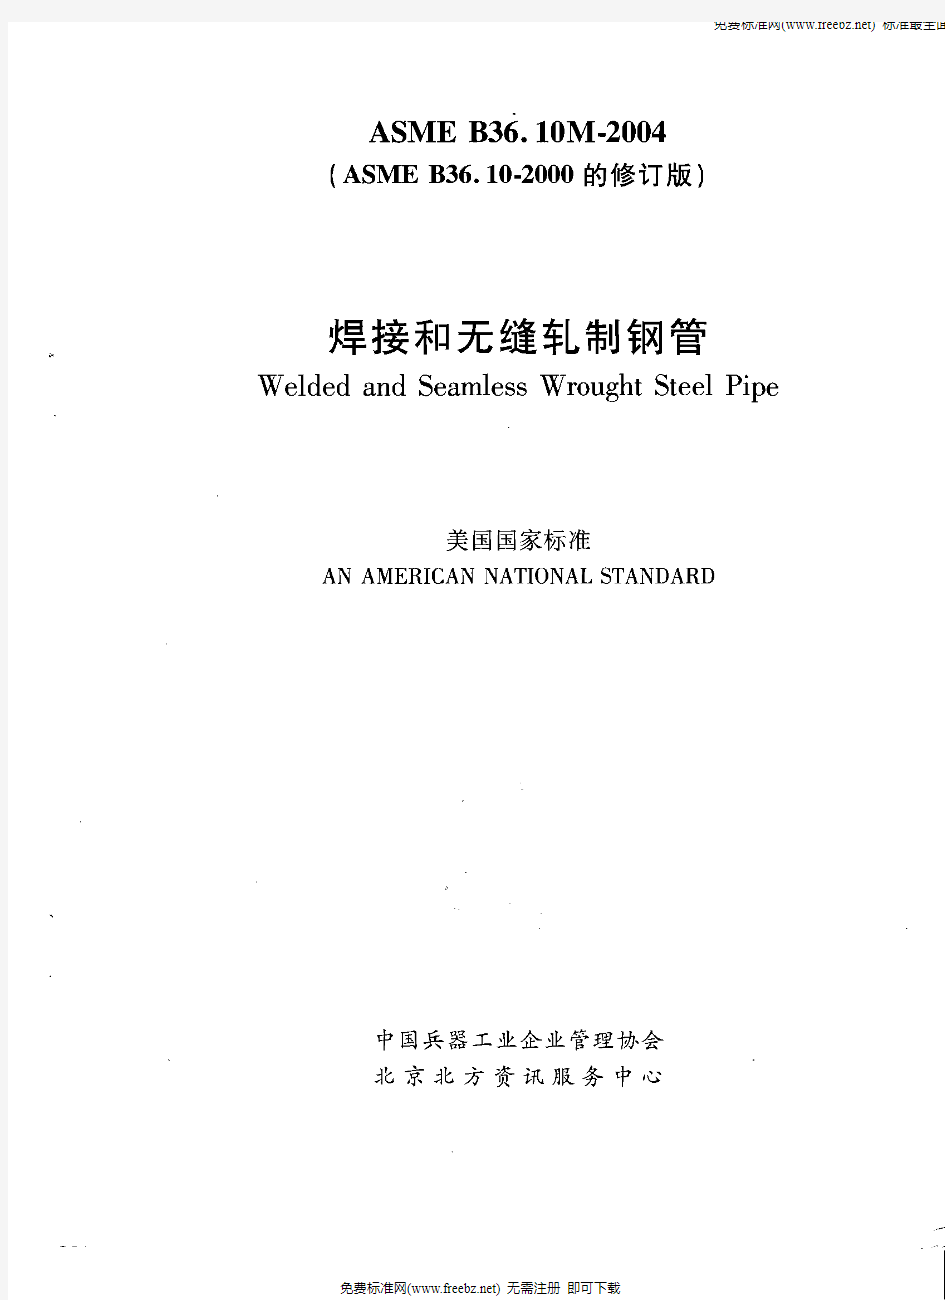 ASME__B36.10-2004_焊接和无缝轧制钢管(中文版)